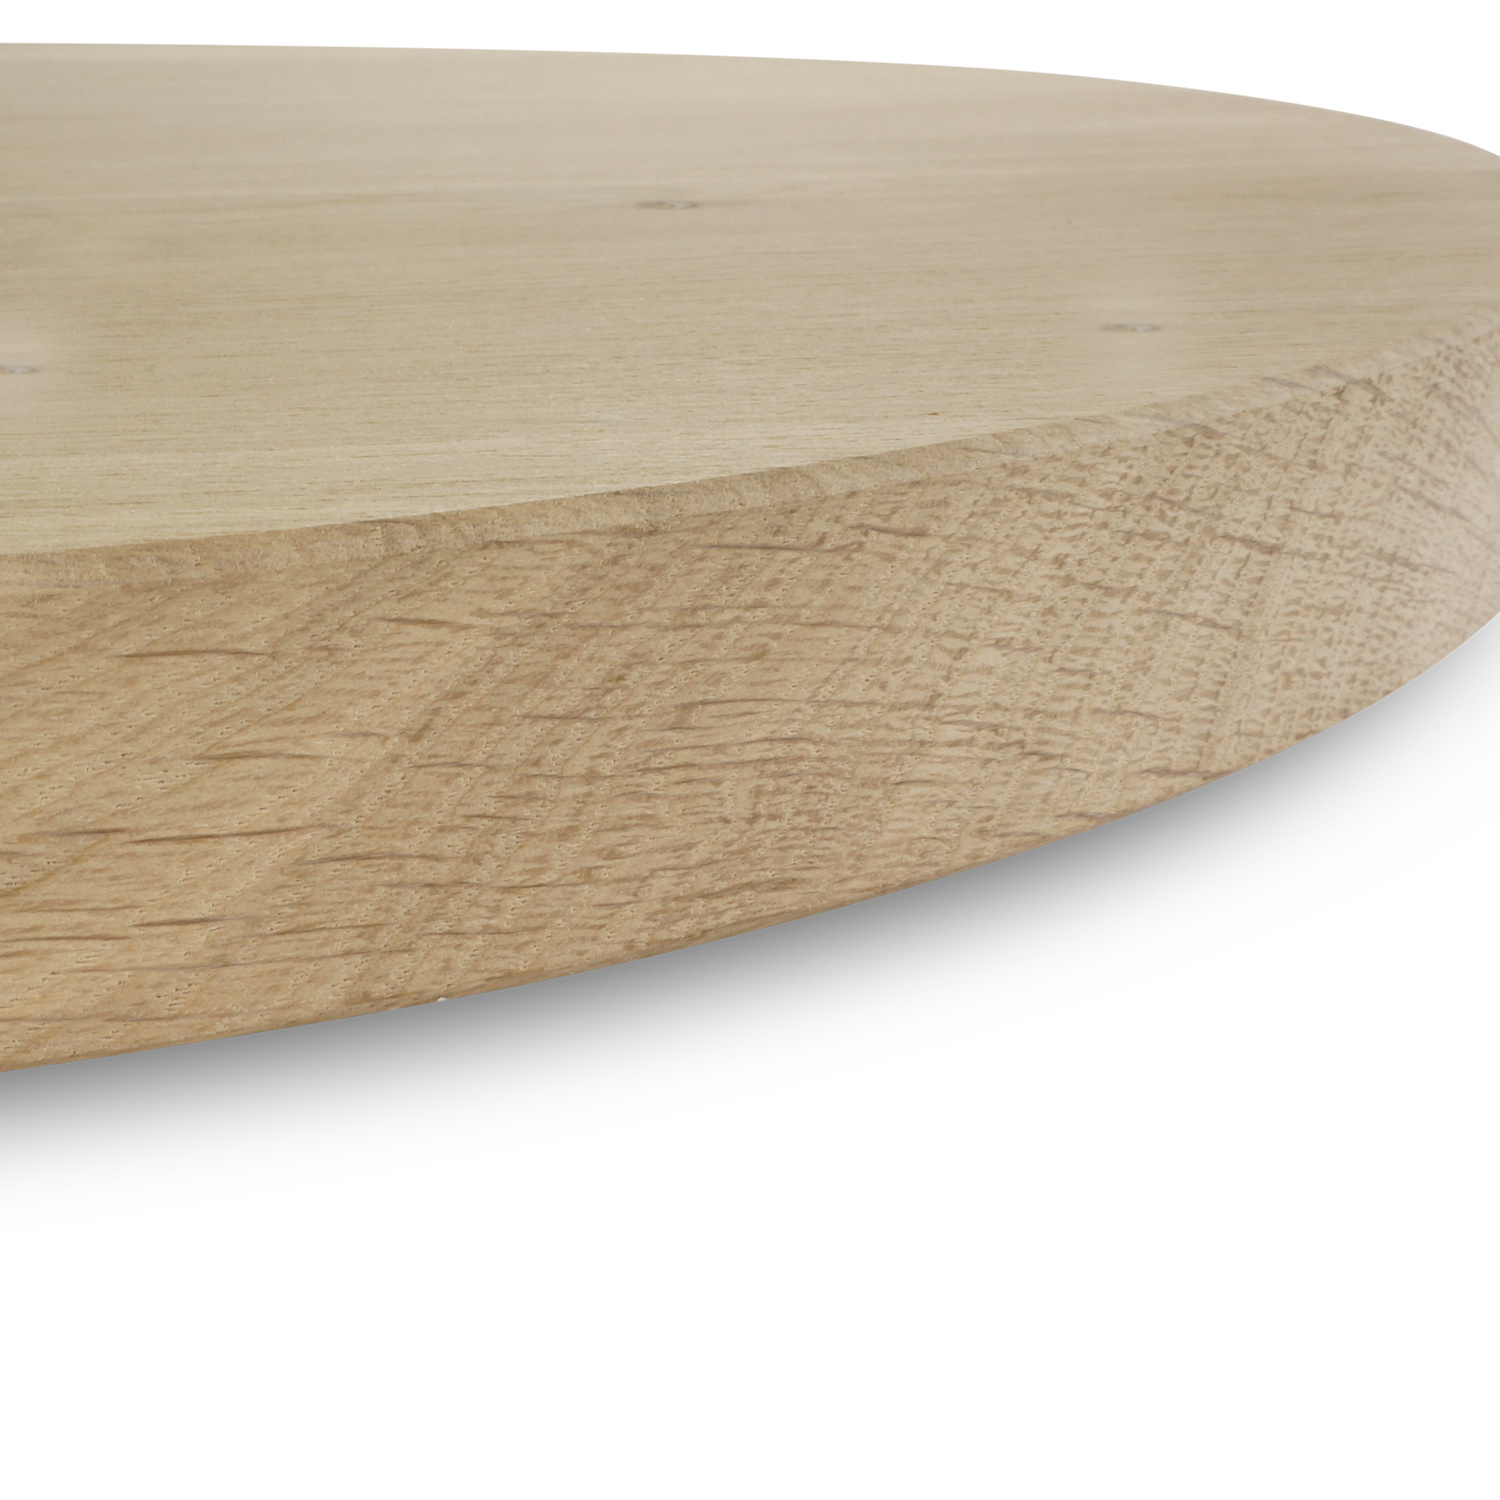  Tischplatte Eiche rund nach Maß - 4 cm dick (1-Schicht) - Breite Lamellen (10 - 12 cm breit) - Eichenholz rustikal - verleimt & künstlich getrocknet (HF 8-12%) - Durchmesser: 50 - 117 cm